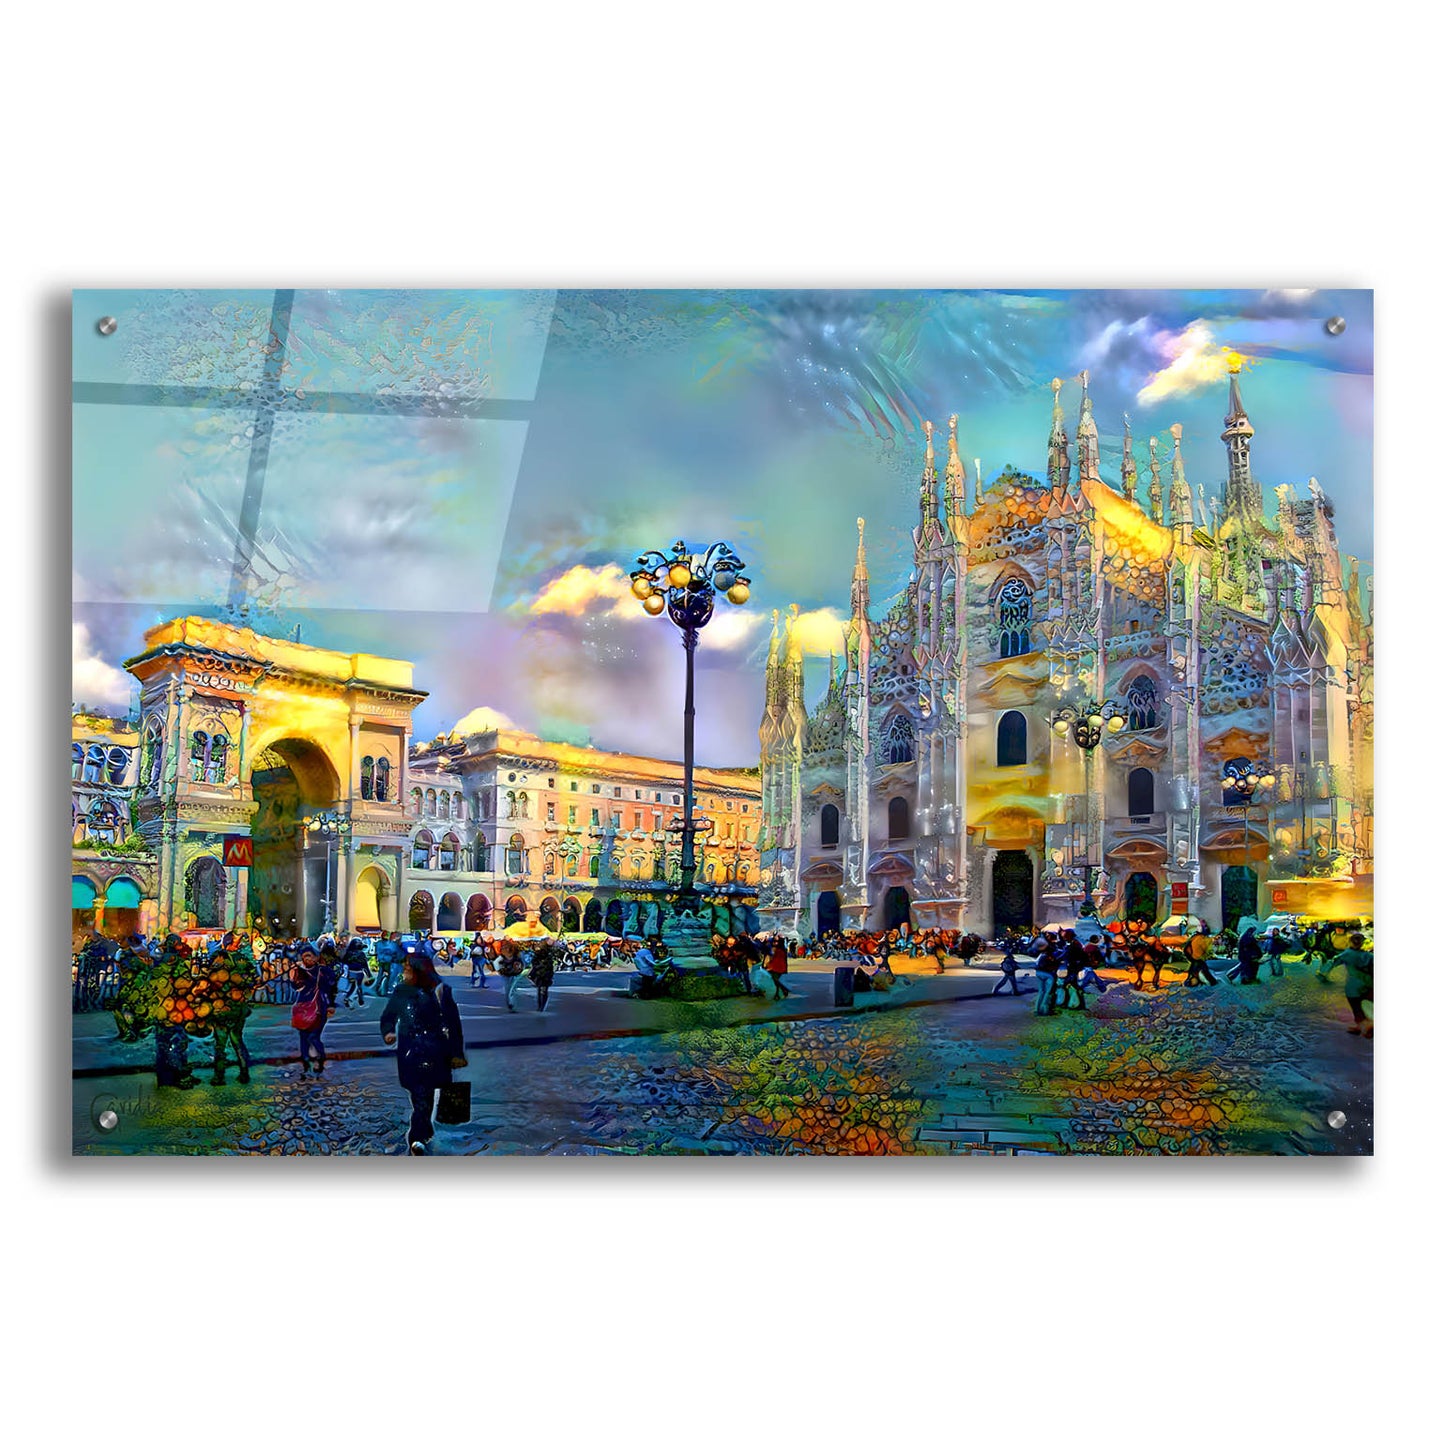 Epic Art 'Milan Italy Piazza del Duomo' by Pedro Gavidia, Acrylic Glass Wall Art,36x24